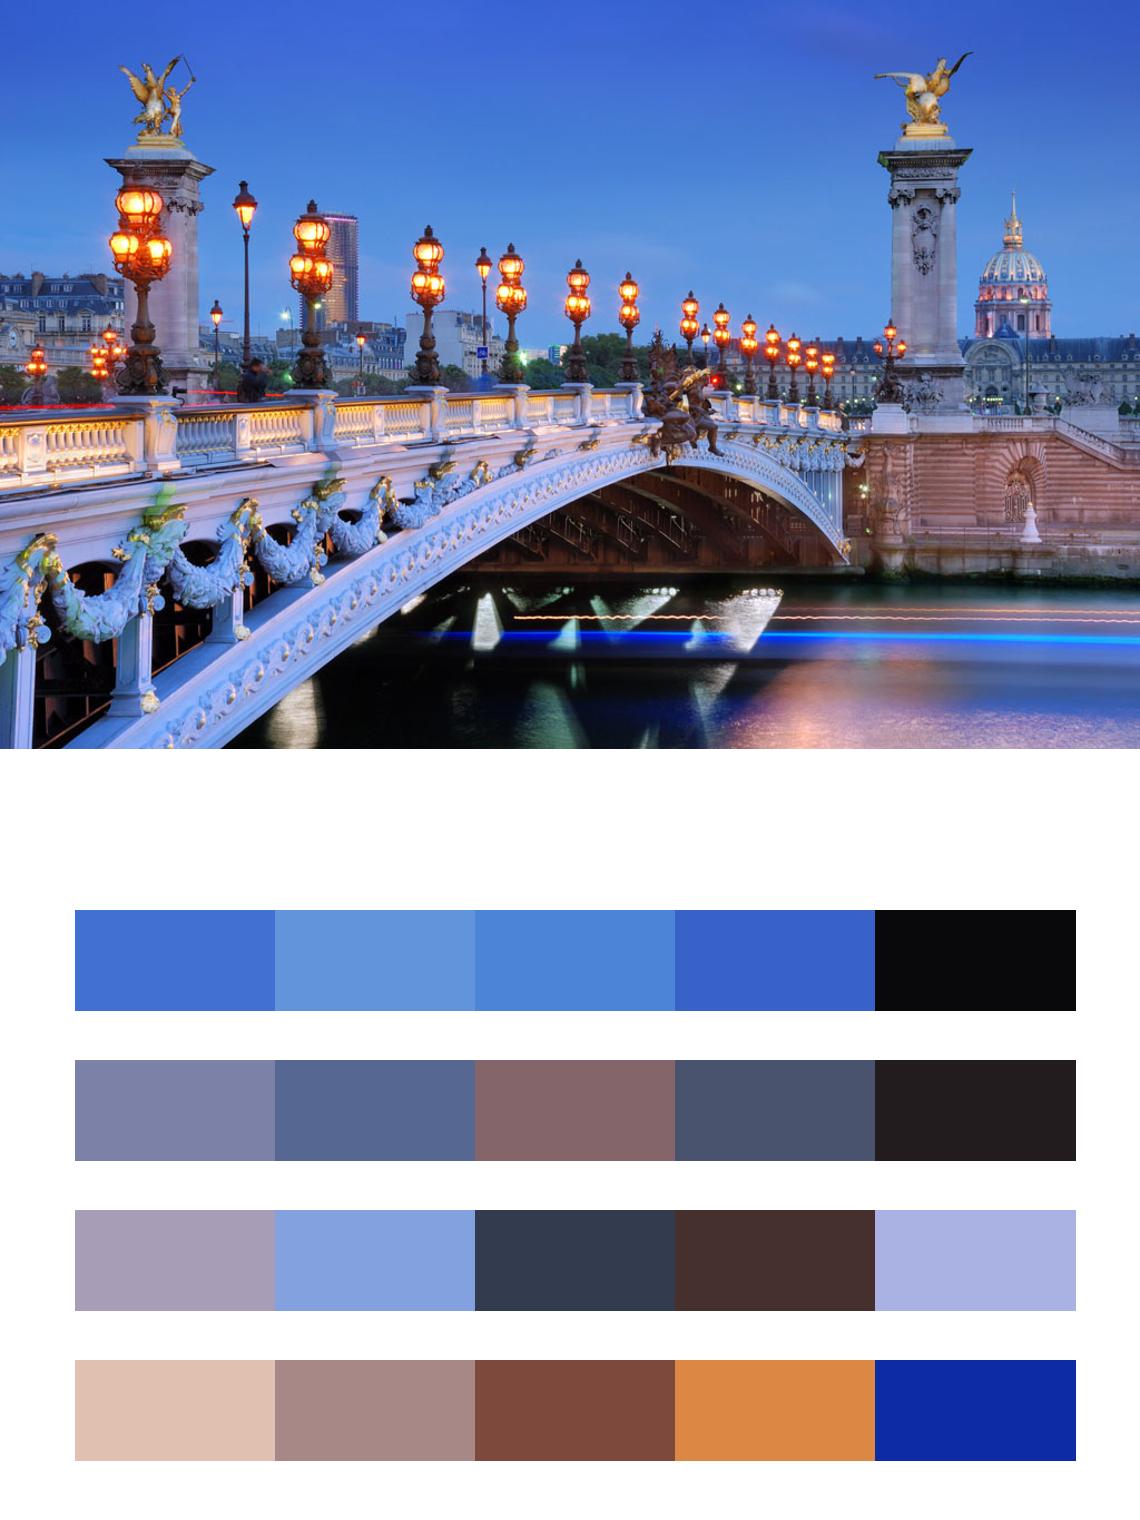 Мост в париже с фонарями цвета